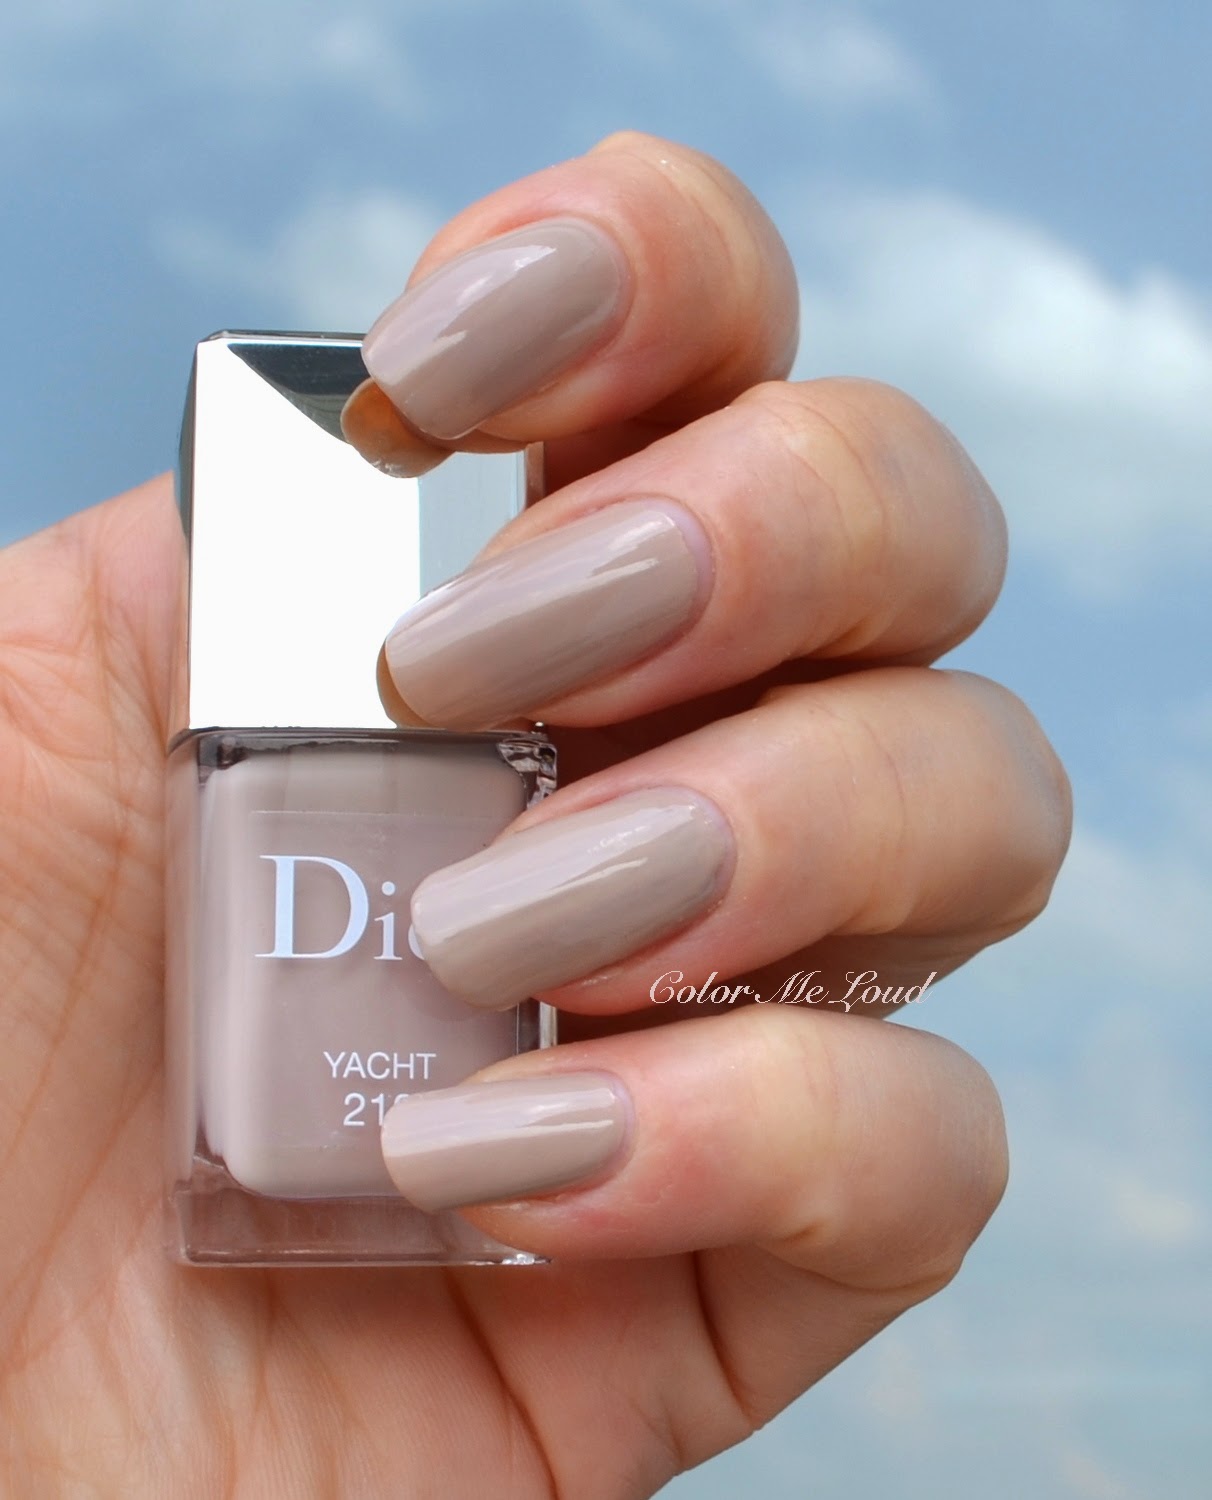 dior yacht nail polish